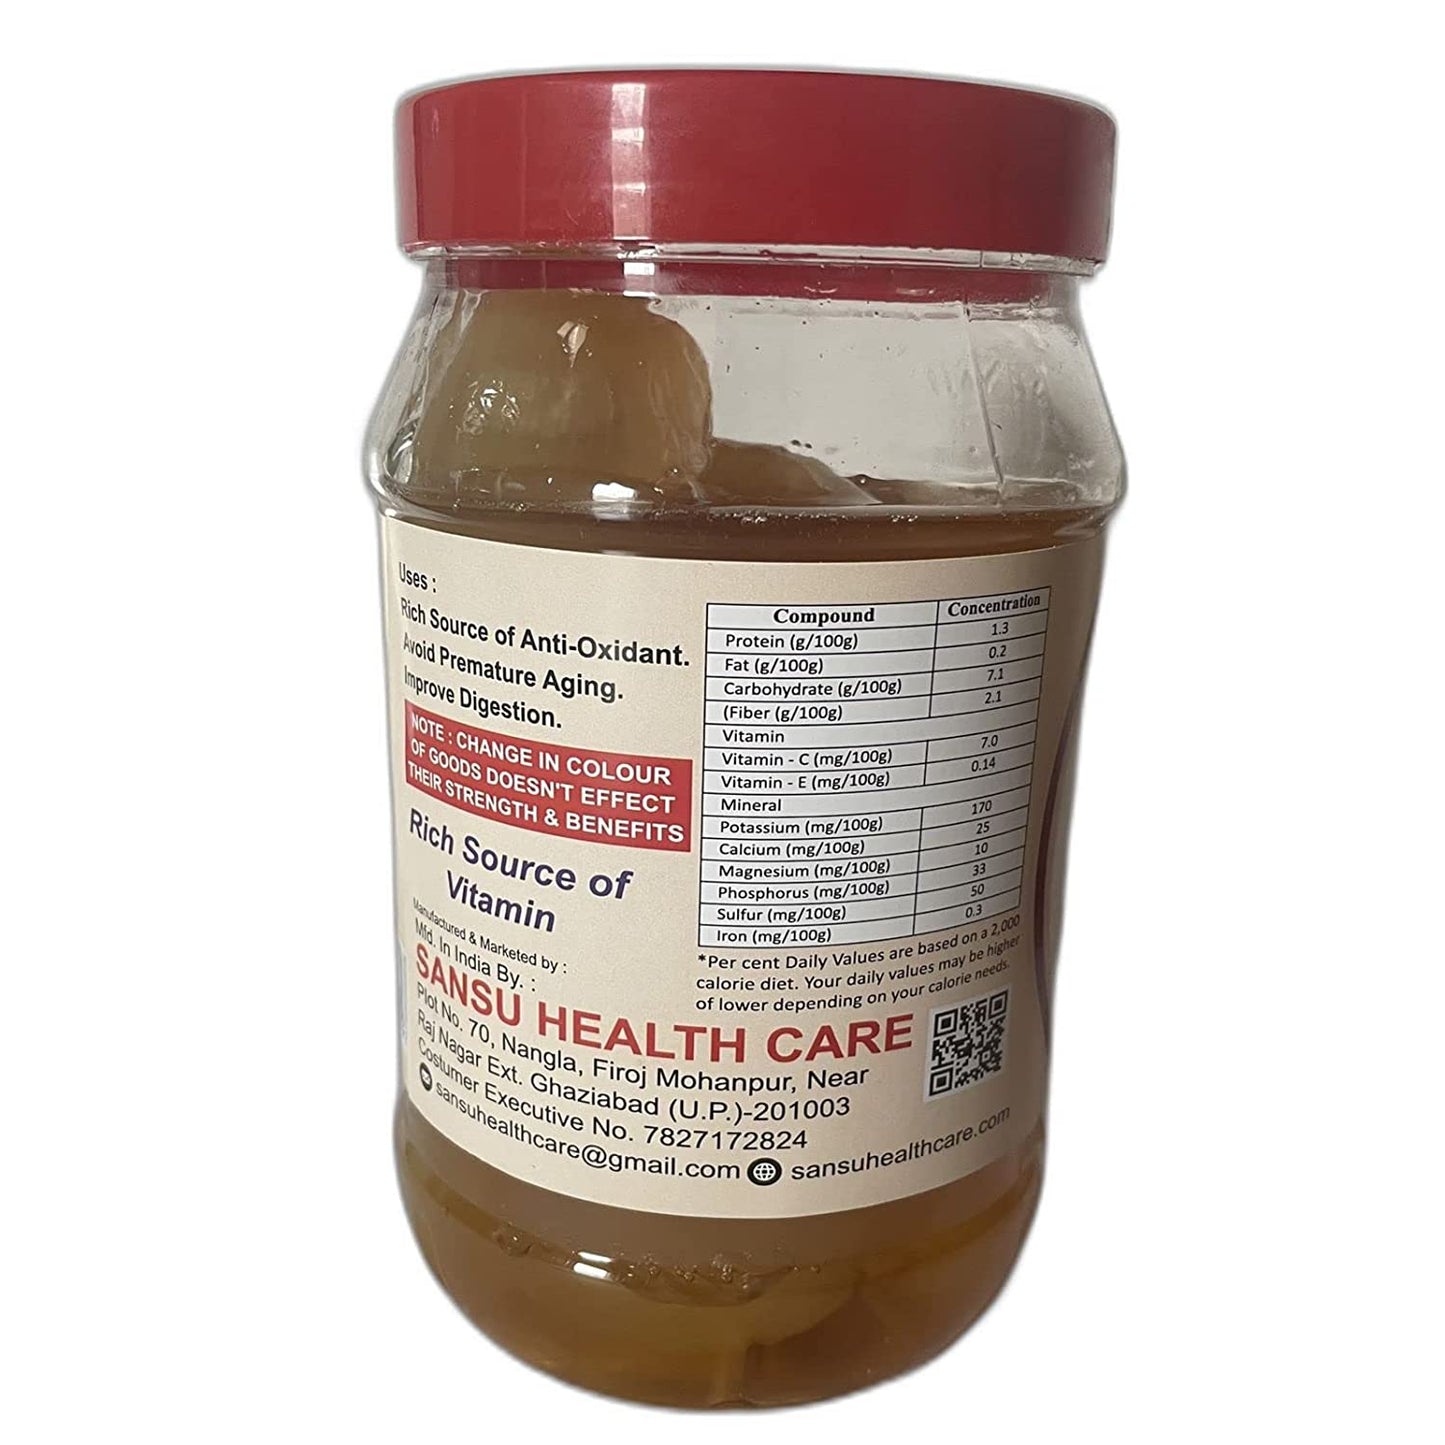 SANSU Homemade Organic White Onion Murabba with Honey" |1kg